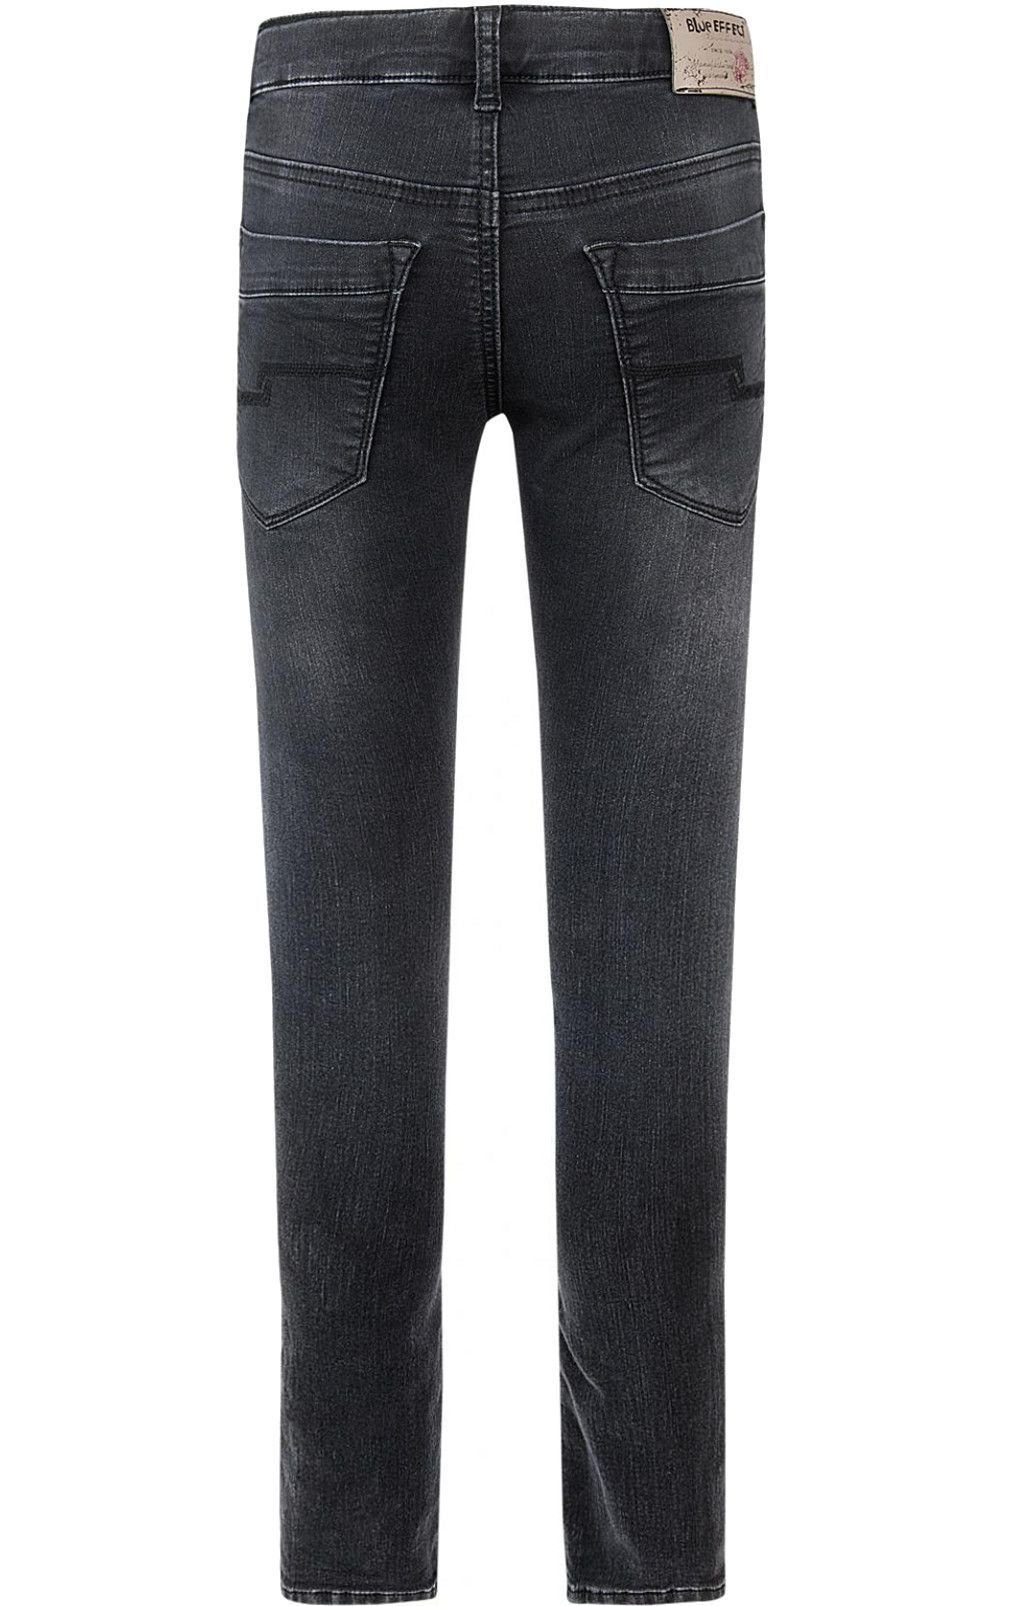 Skinny ultrastretch black Hose regular fit Jeans Regular-fit-Jeans BLUE EFFECT